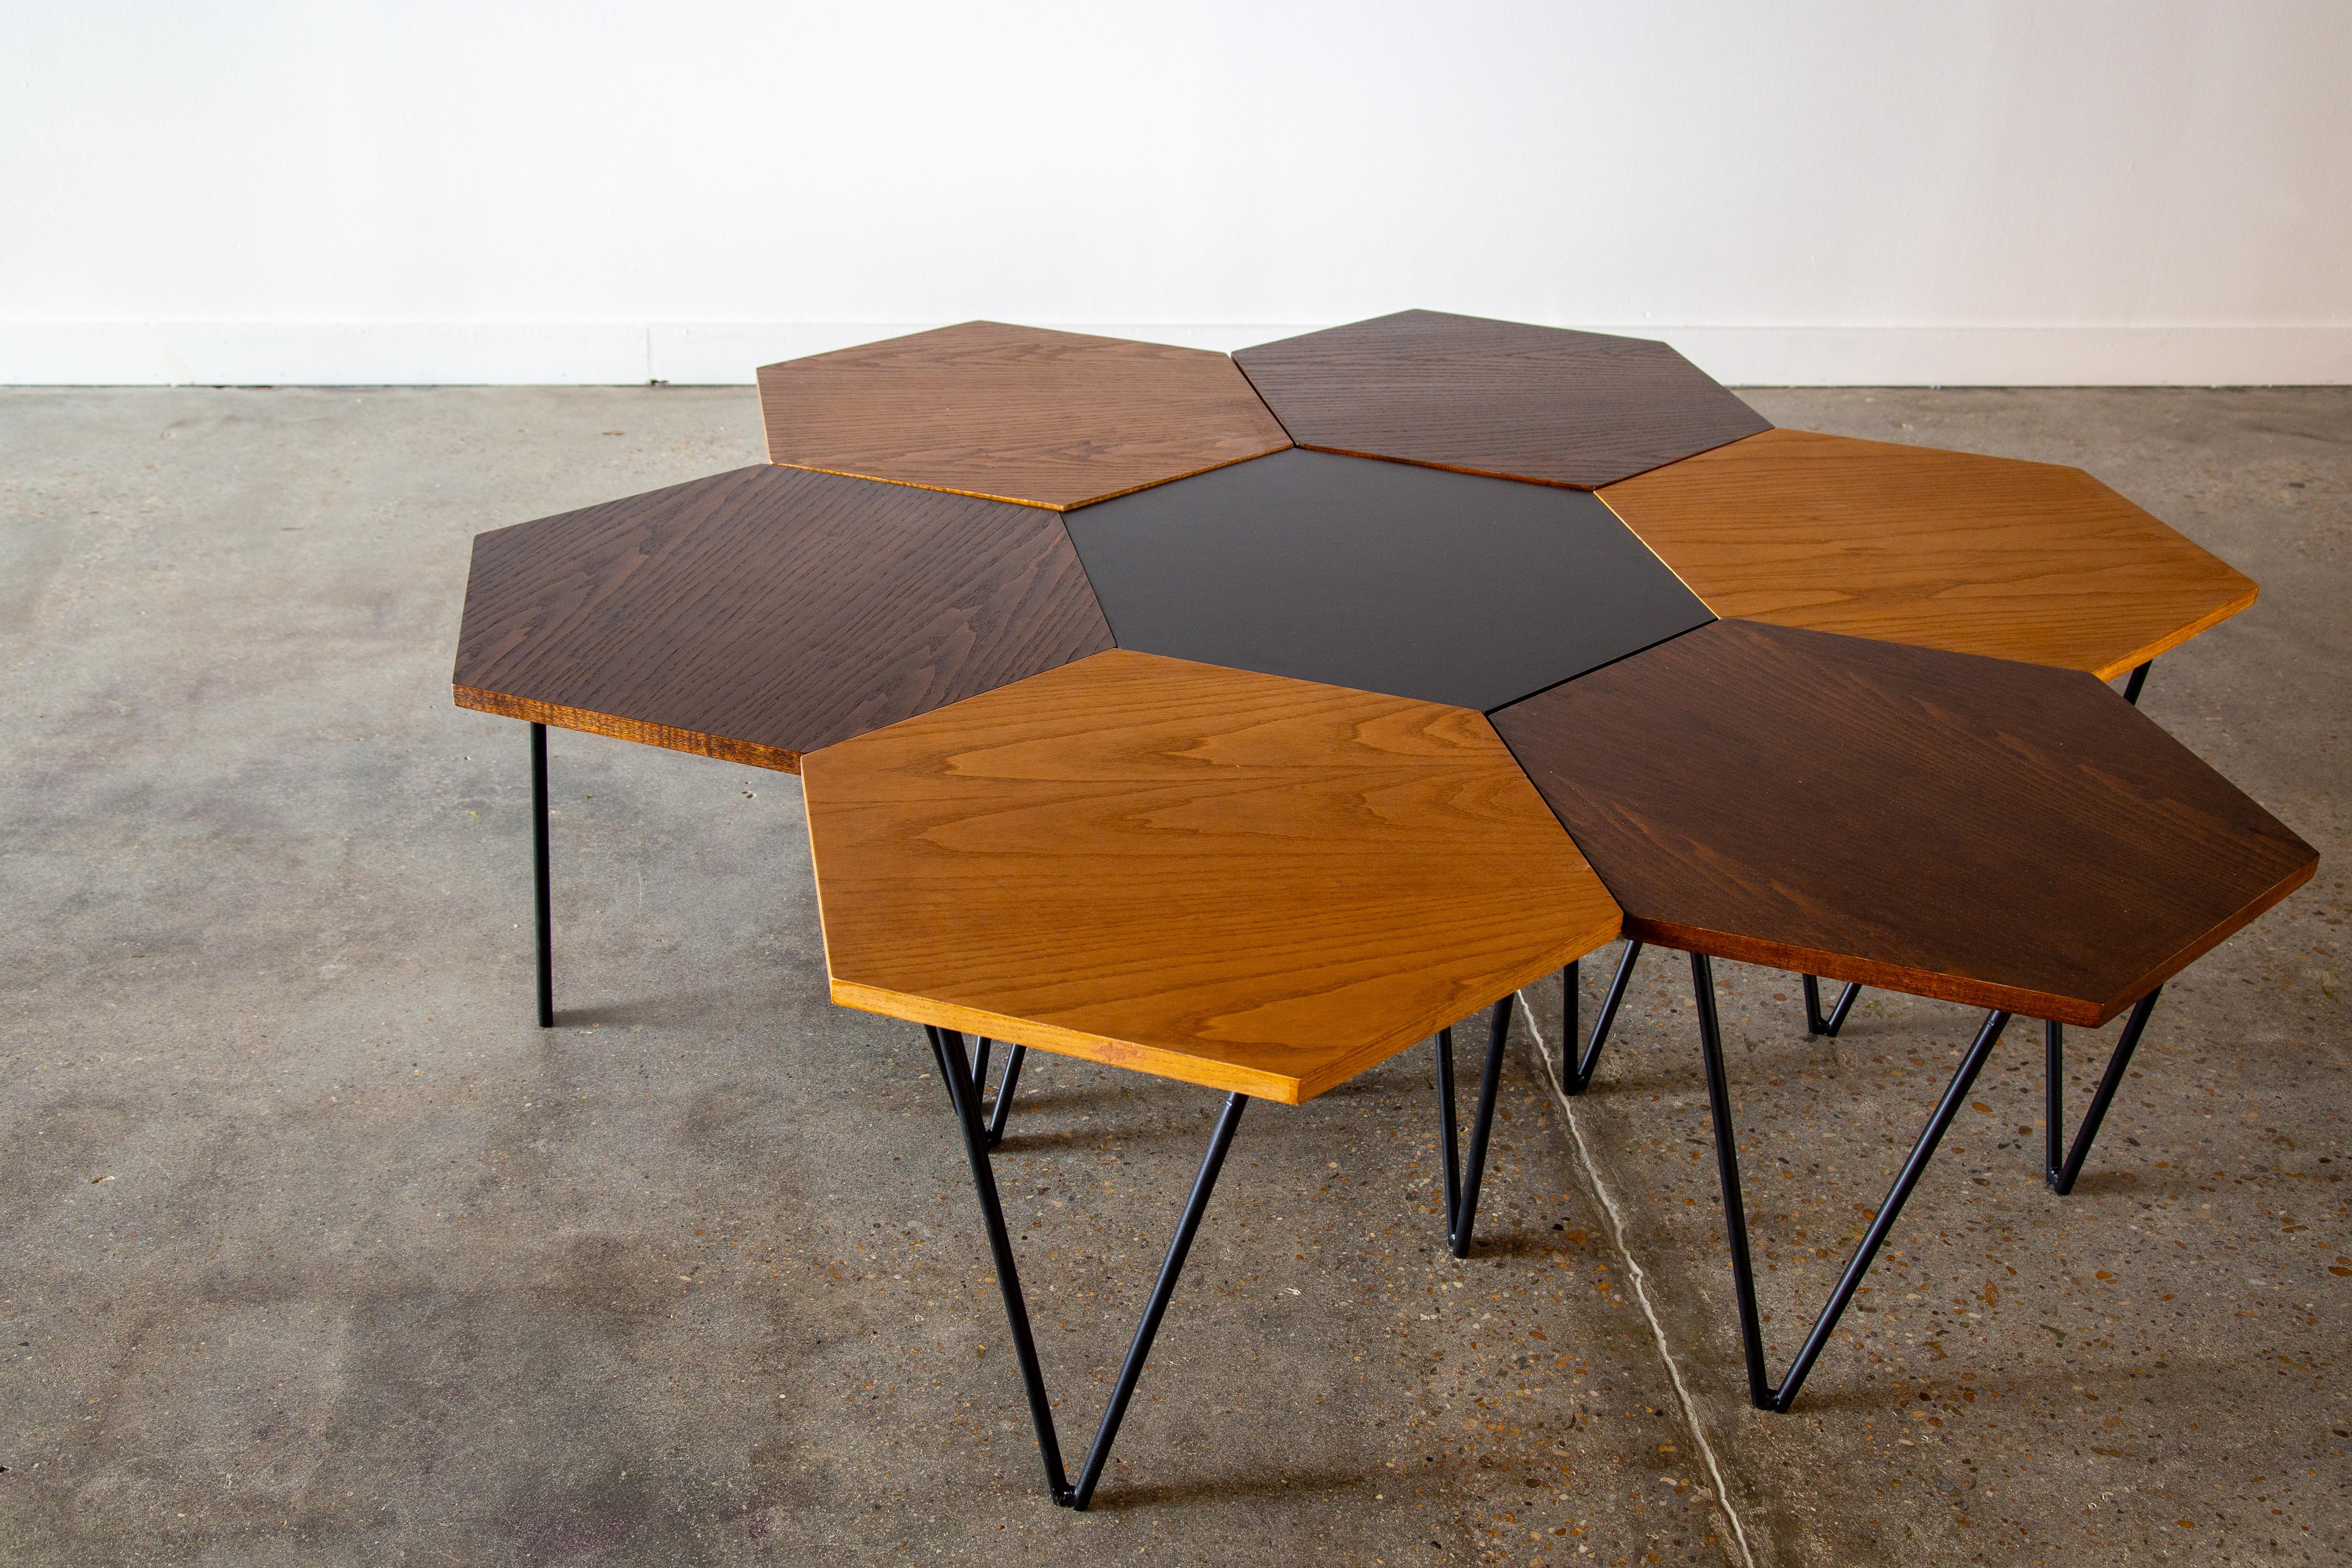 Ein äußerst seltenes Tischset, das von Gio Ponti für ISA entworfen wurde.  Die dreifarbigen Platten bestehen aus schwarzem Laminat, dunkler gebeizter Eiche und honigfarben gebeizter Eiche und stehen auf einem Dreibein aus emaillierten Stahlbeinen. 